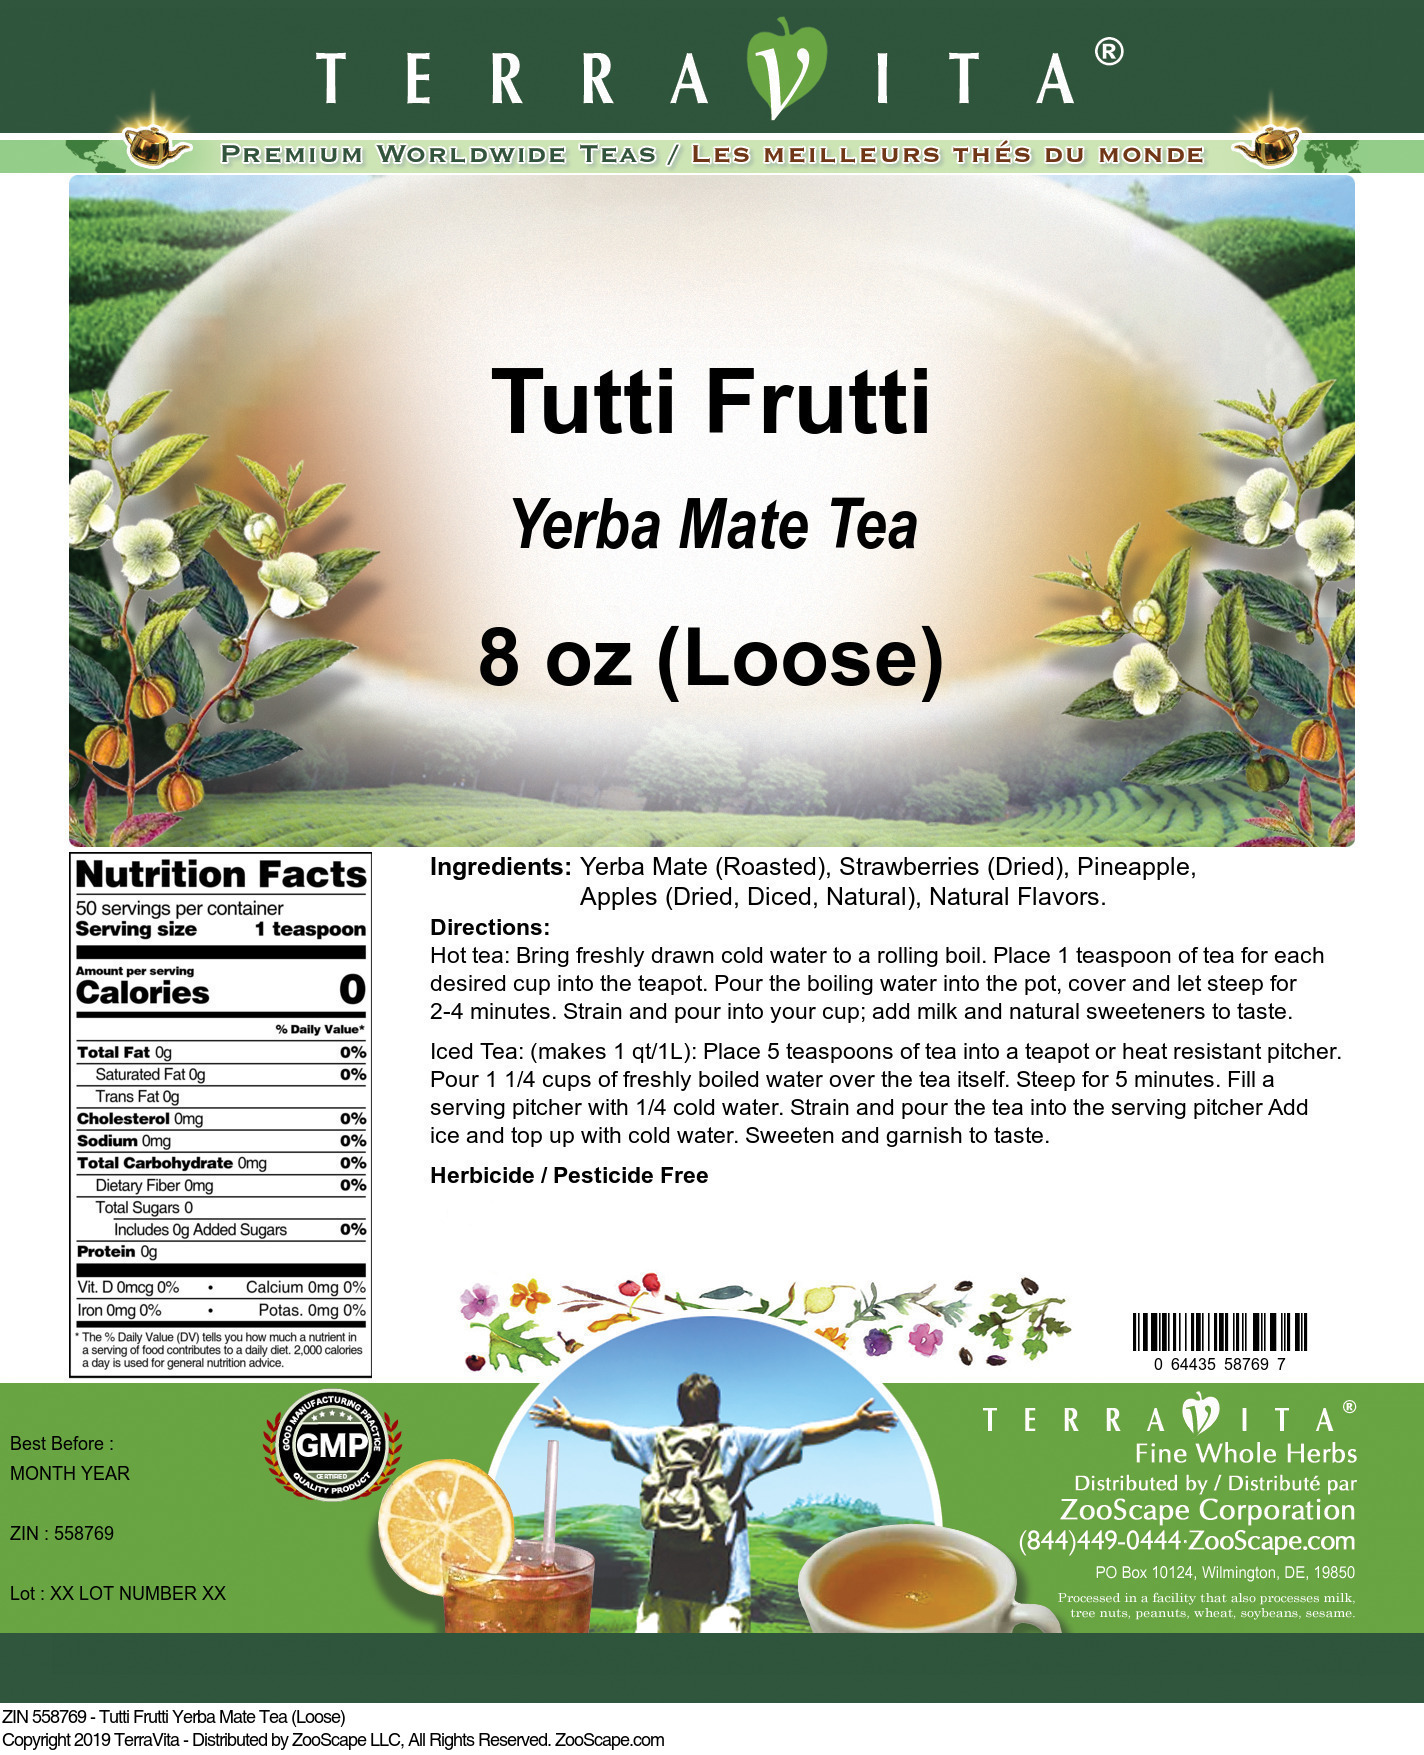 Tutti Frutti Yerba Mate Tea (Loose) - Label